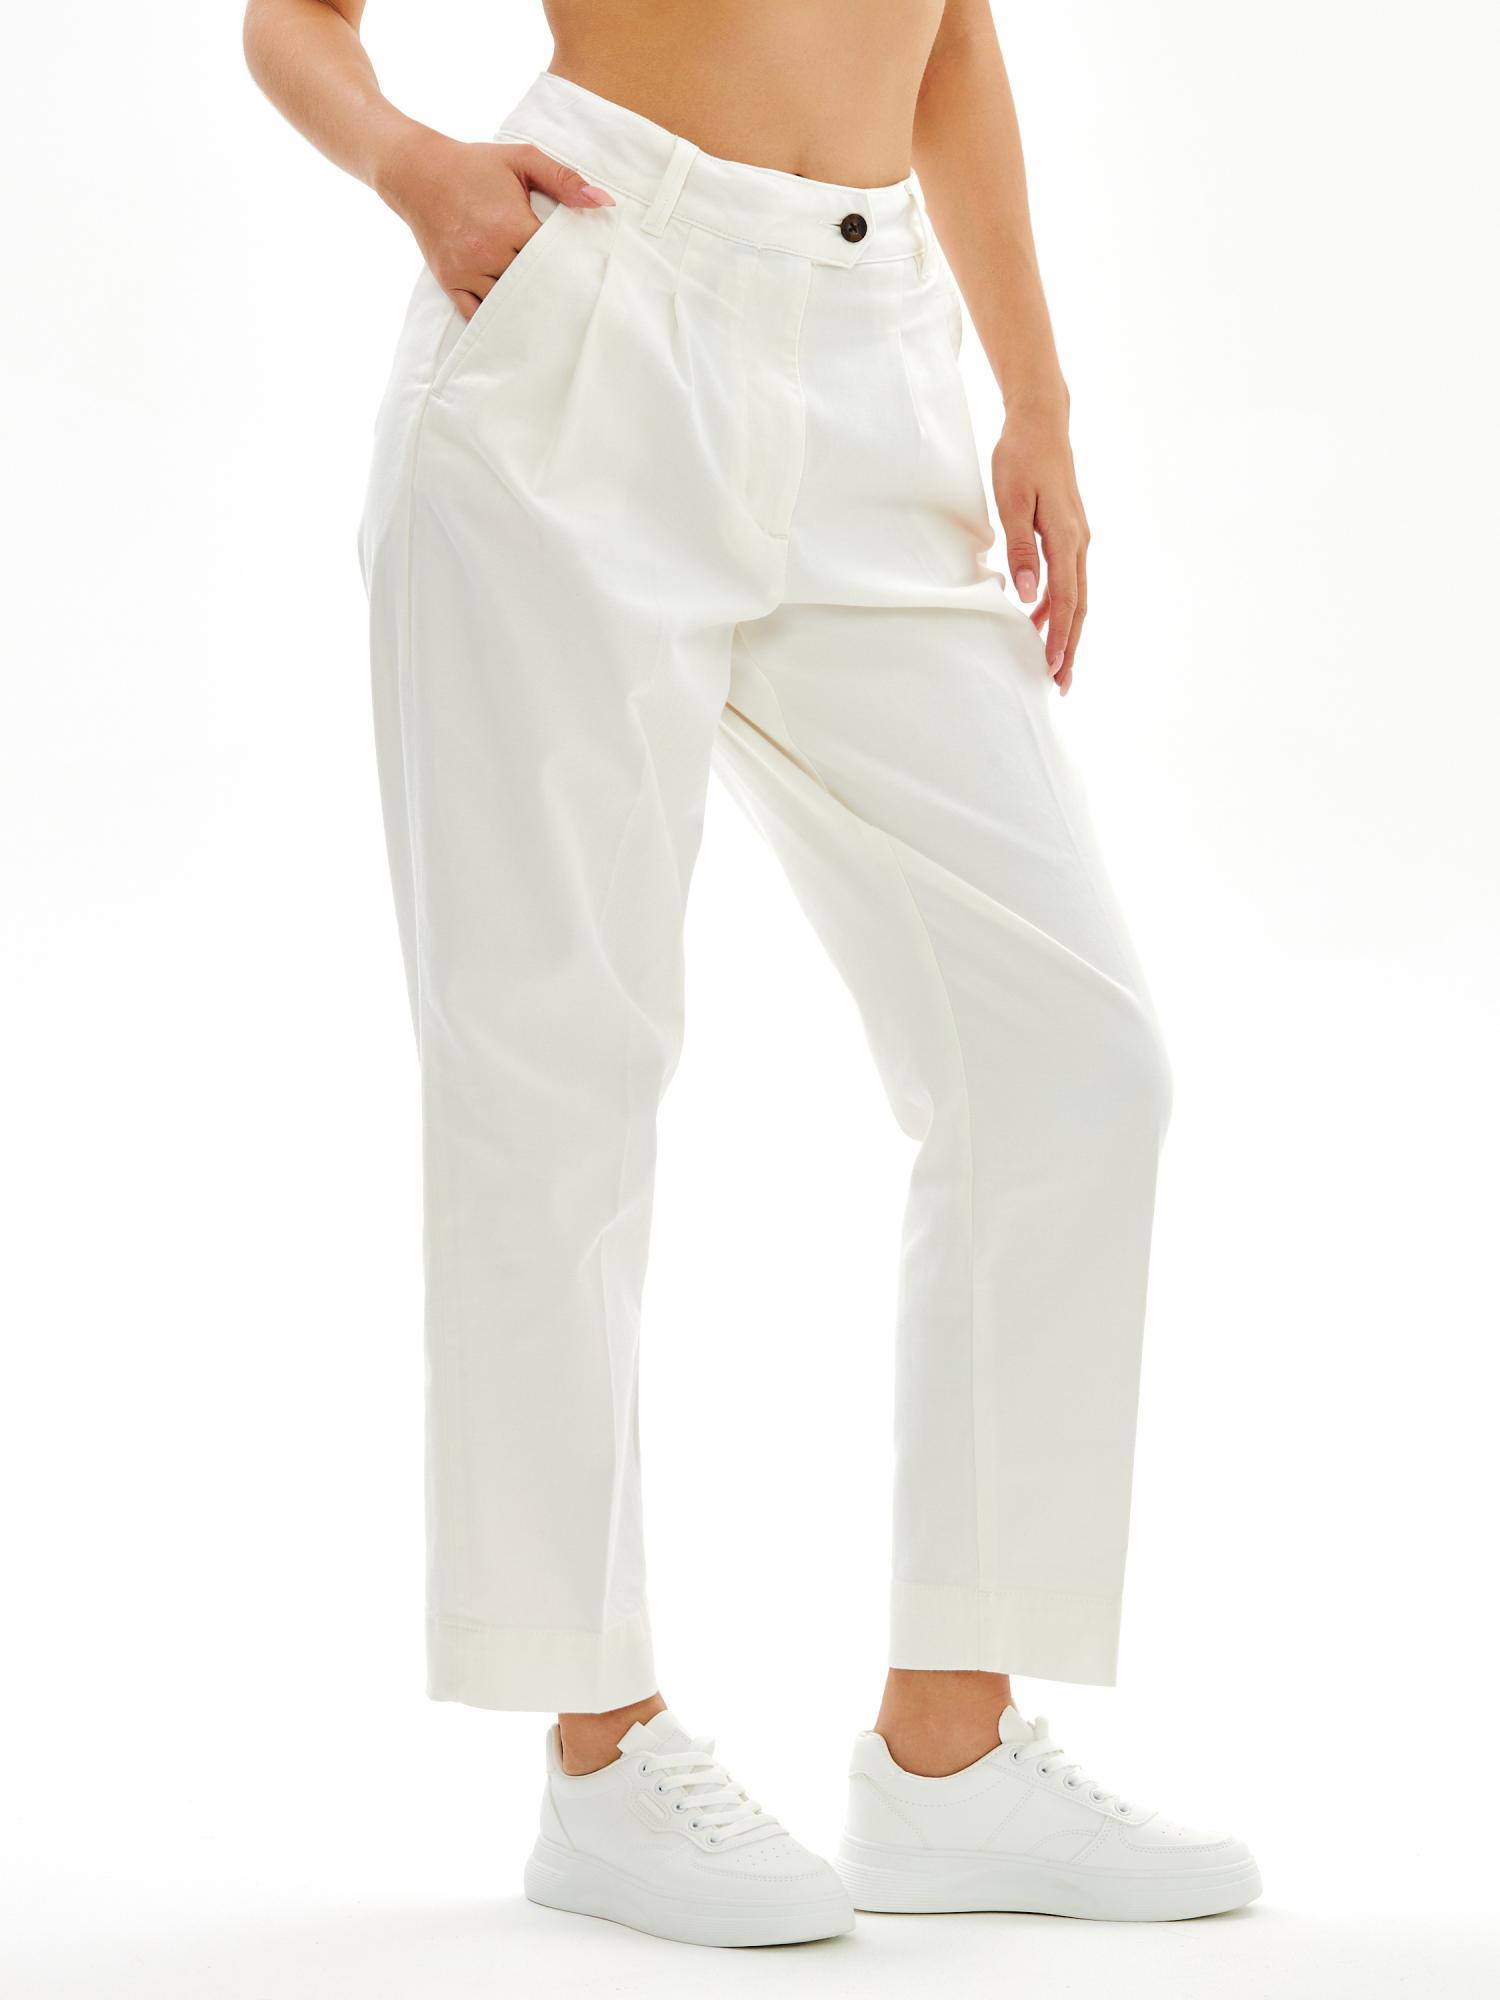 Женские брюки чинос Gant, белые, цвет белый, размер 46